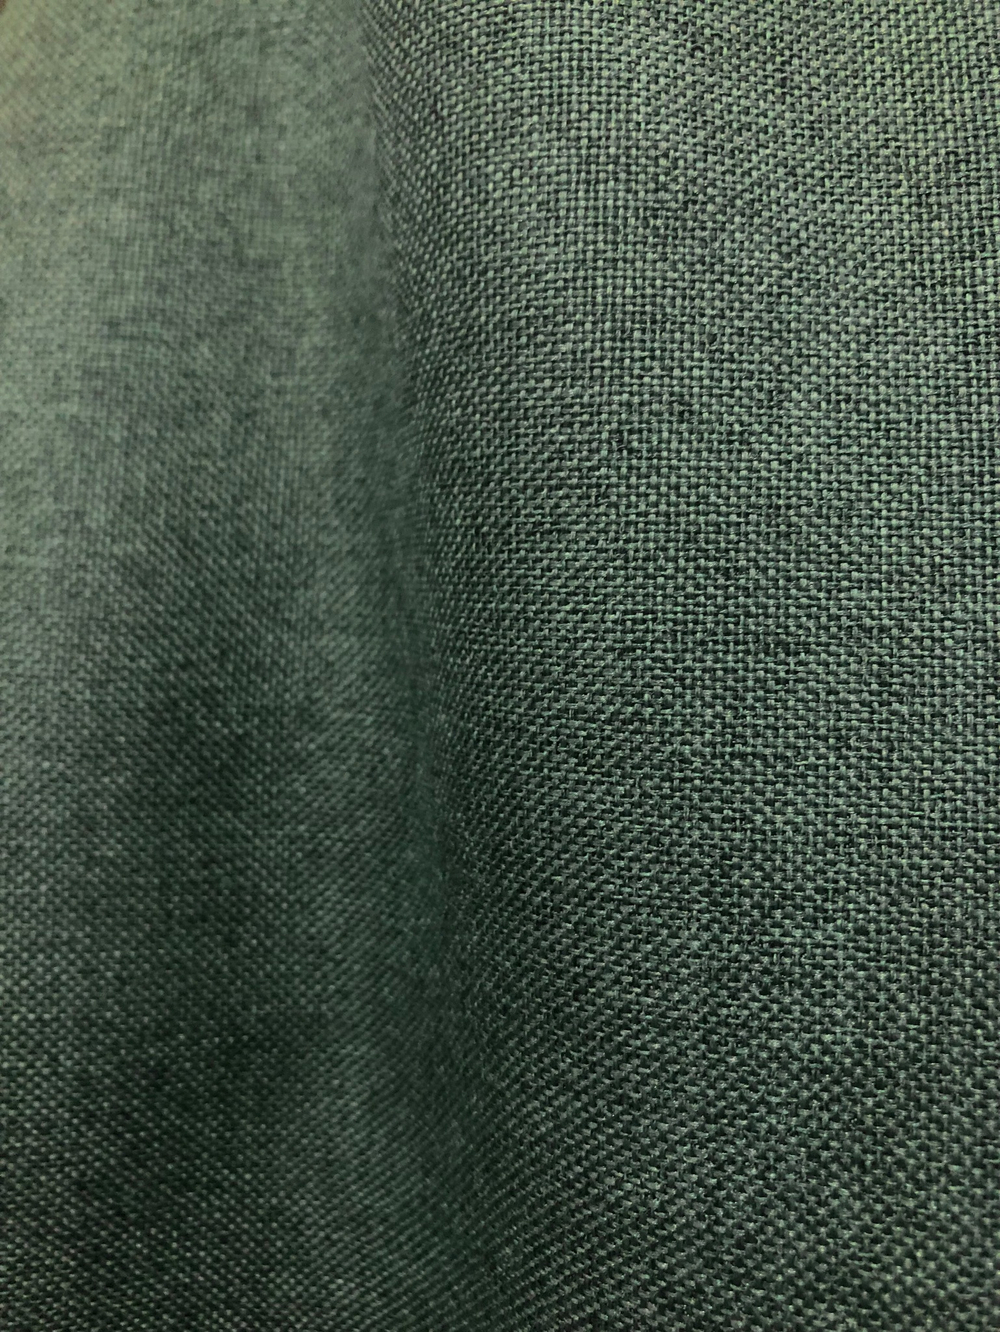 Ткань портьерная Блэкаут-лен, цвет зеленый, артикул 327619